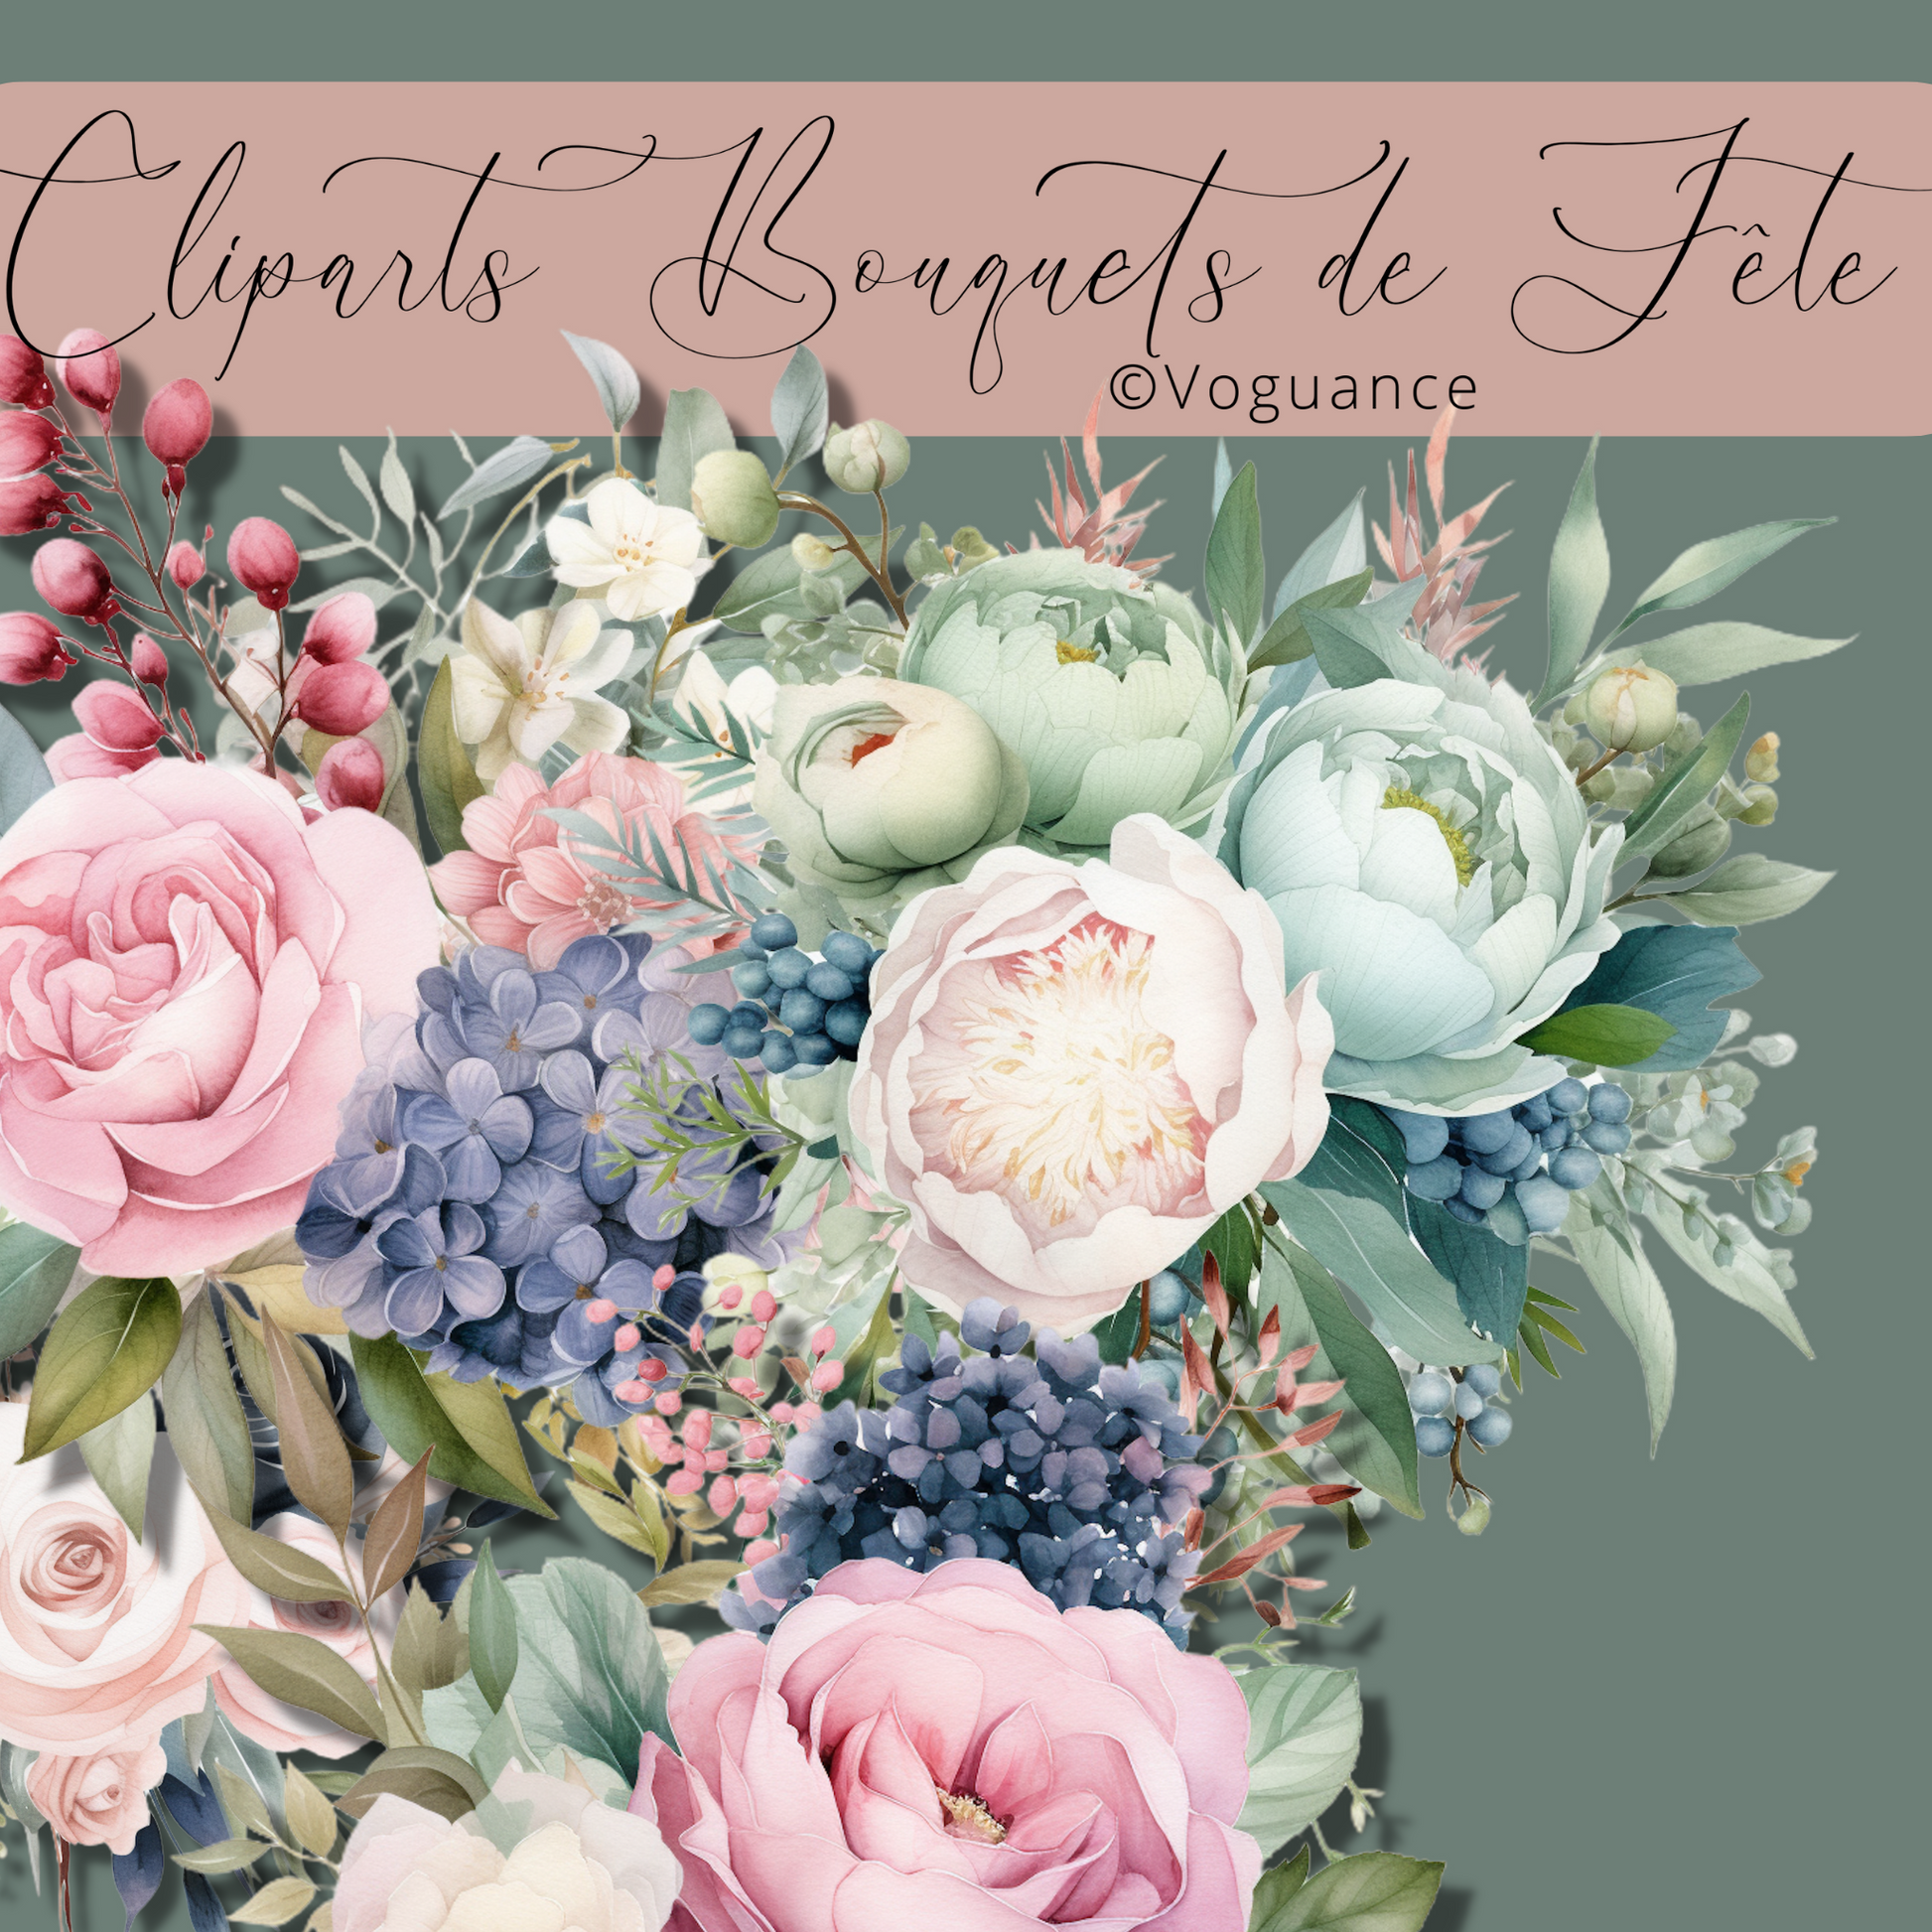 Cliparts de Bouquets Élégants : Roses, Hortensias, Fleurs Exotiques & Eucalyptus - Premium Media de voguance - Seulement €5! J'achète maintenant voguance